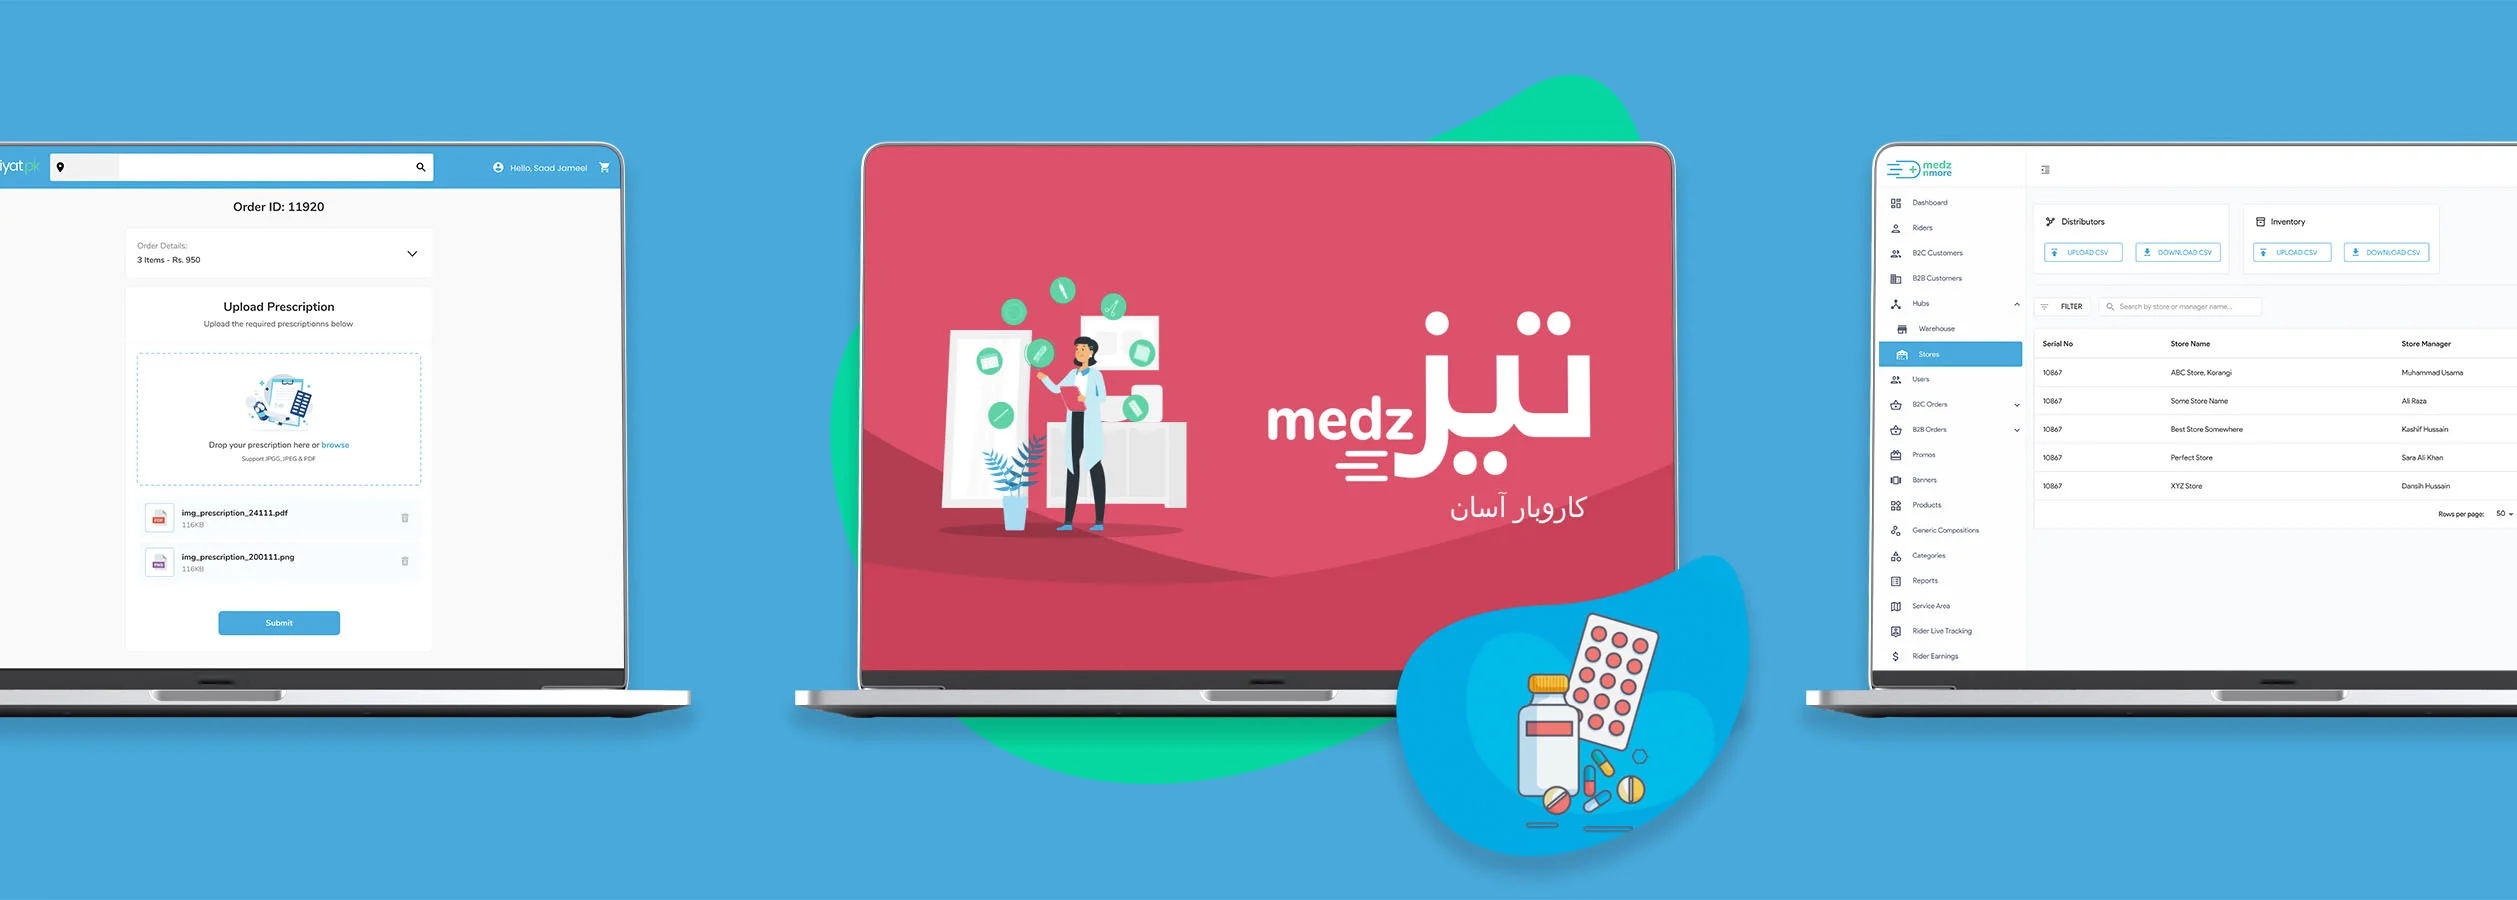 MedznMore: Digitizing the B2C and B2B pharmaceutical supply-chain with Tabiyat.pk and TezMedz